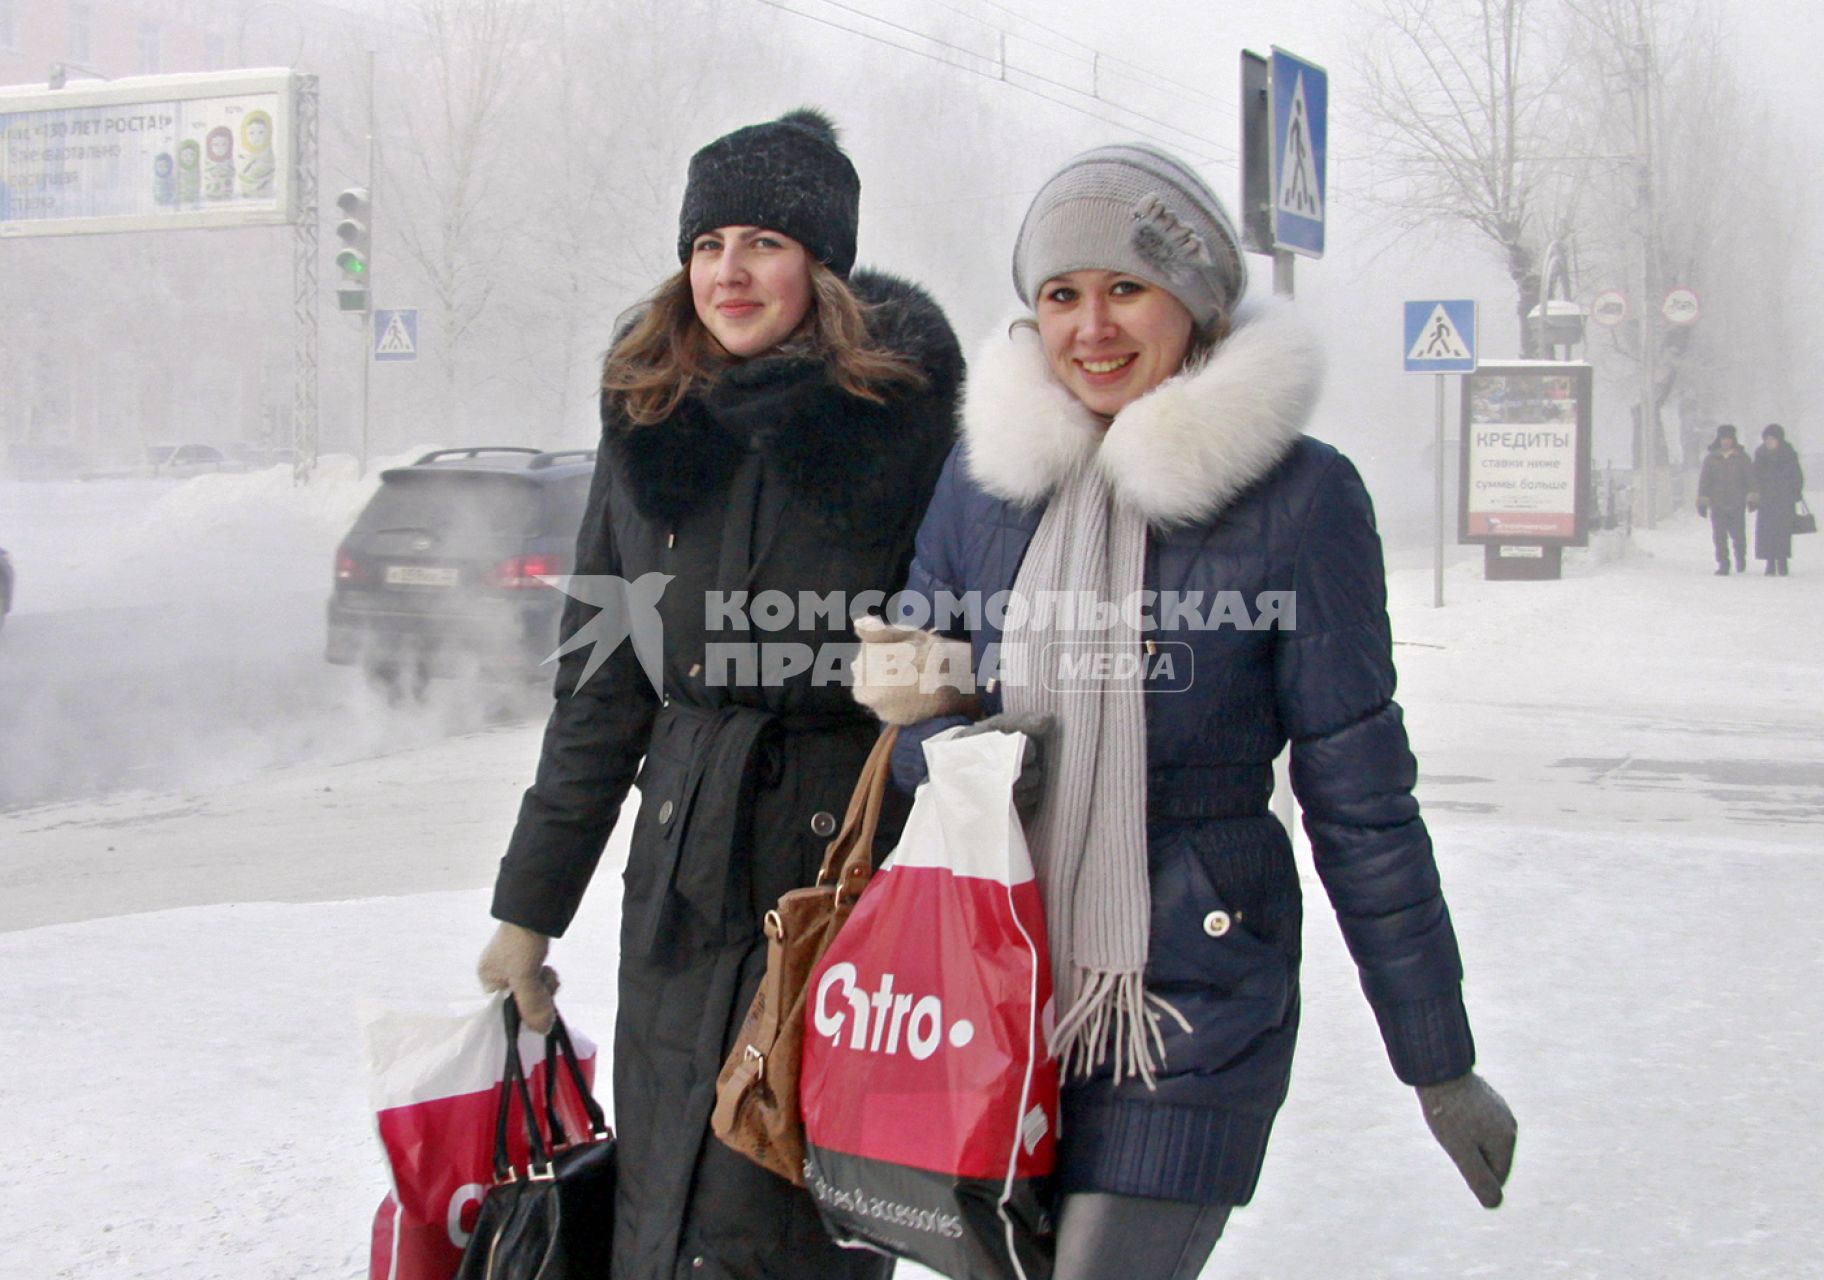 Две девушки улыбаясь идут под руку по заснеженной улице Барнаула.